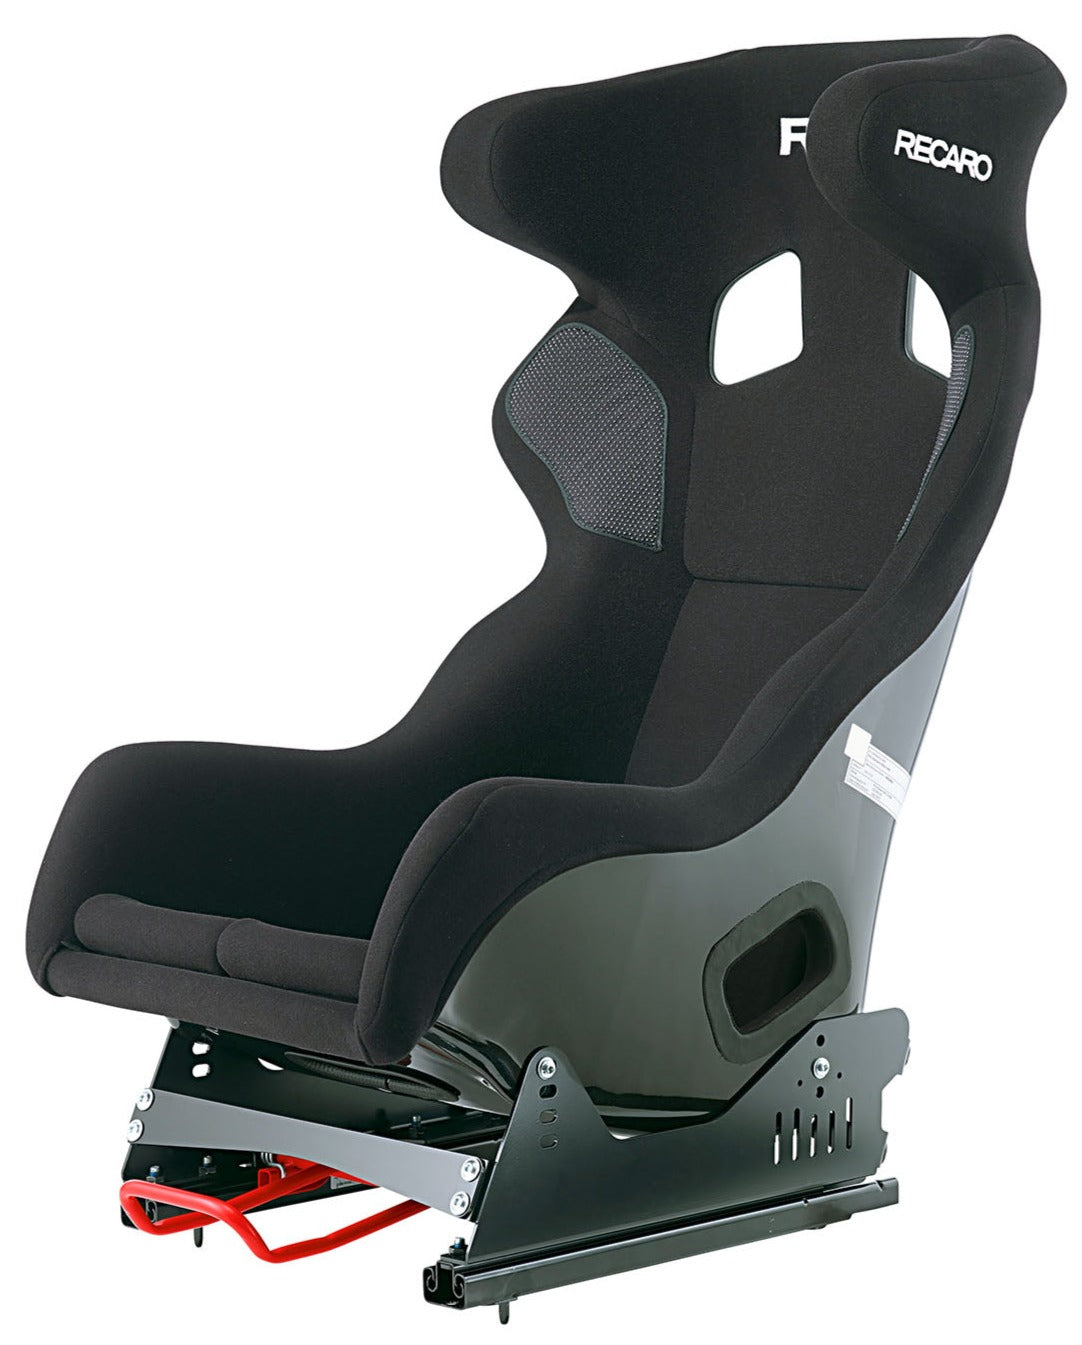 Recaro Pro Racer SPA Racing Seat